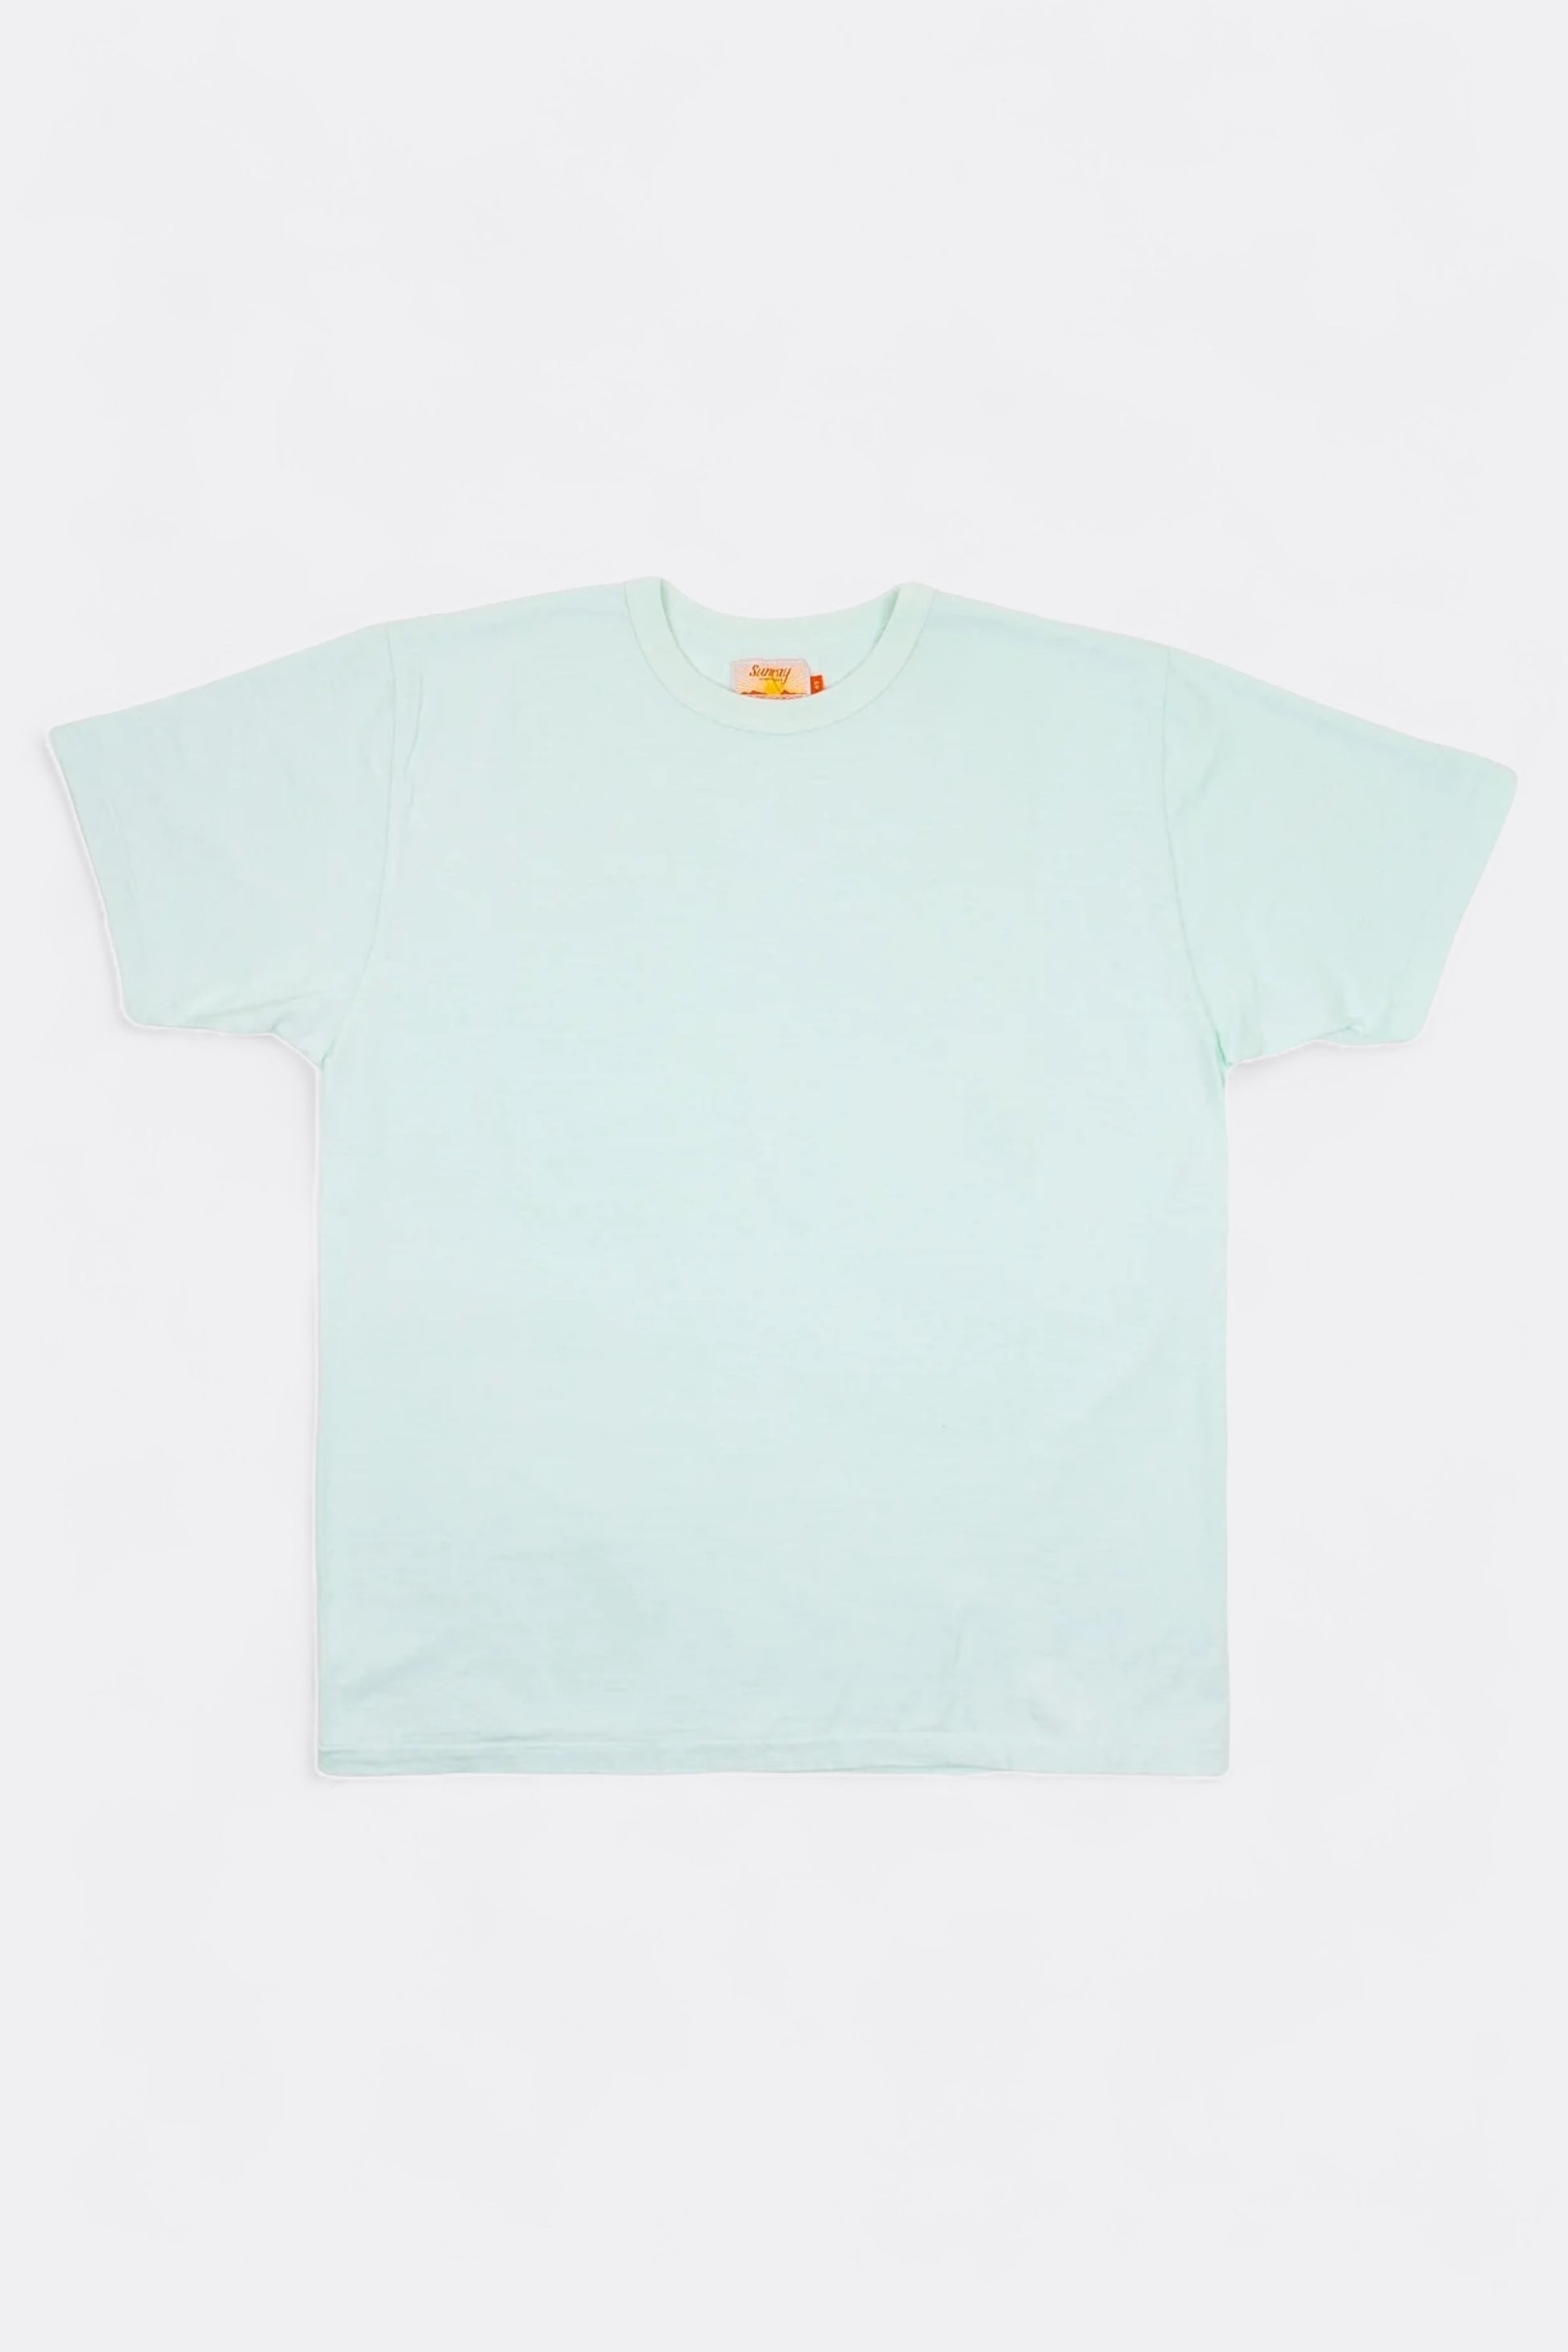 Sunray Sportswear - Haleiwa T-Shirt (Billowing Sail)